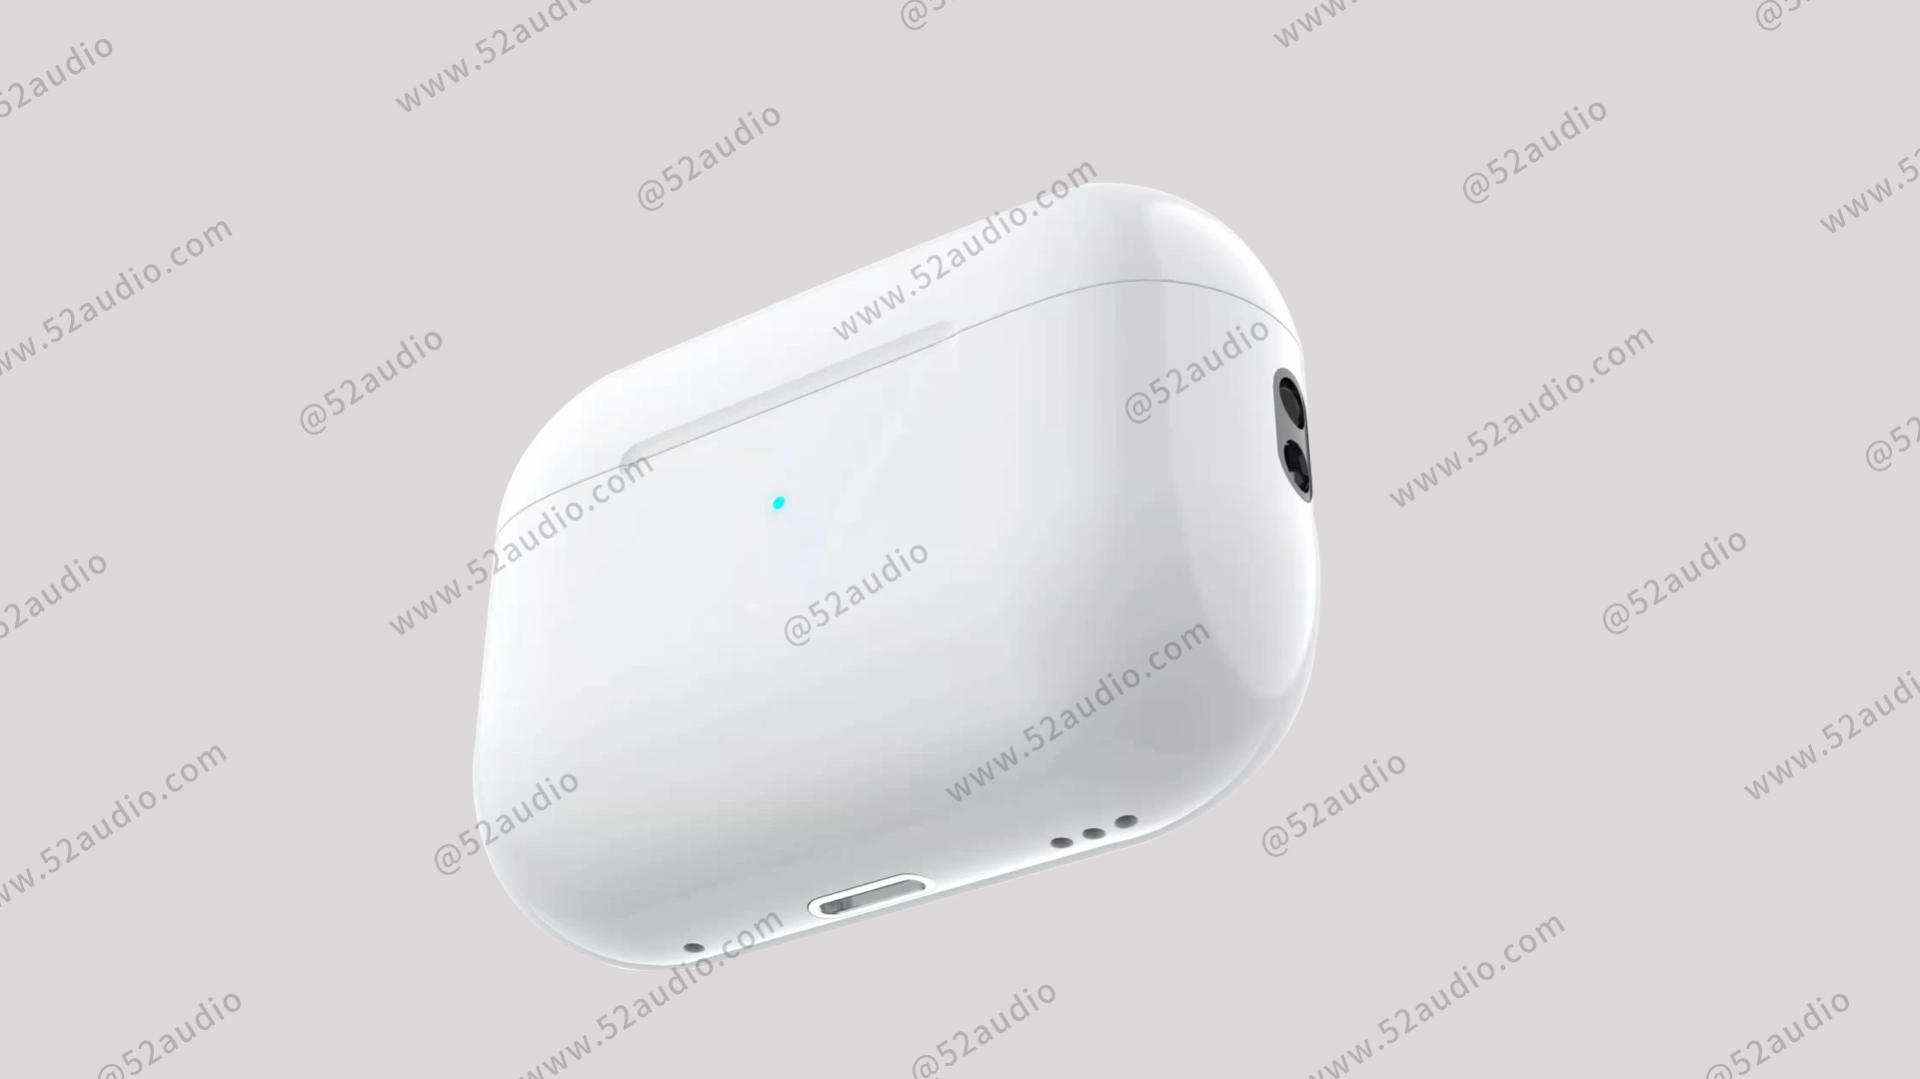 Image de la conception supposée de l'étui de chargement Apple Airpods Pro 2